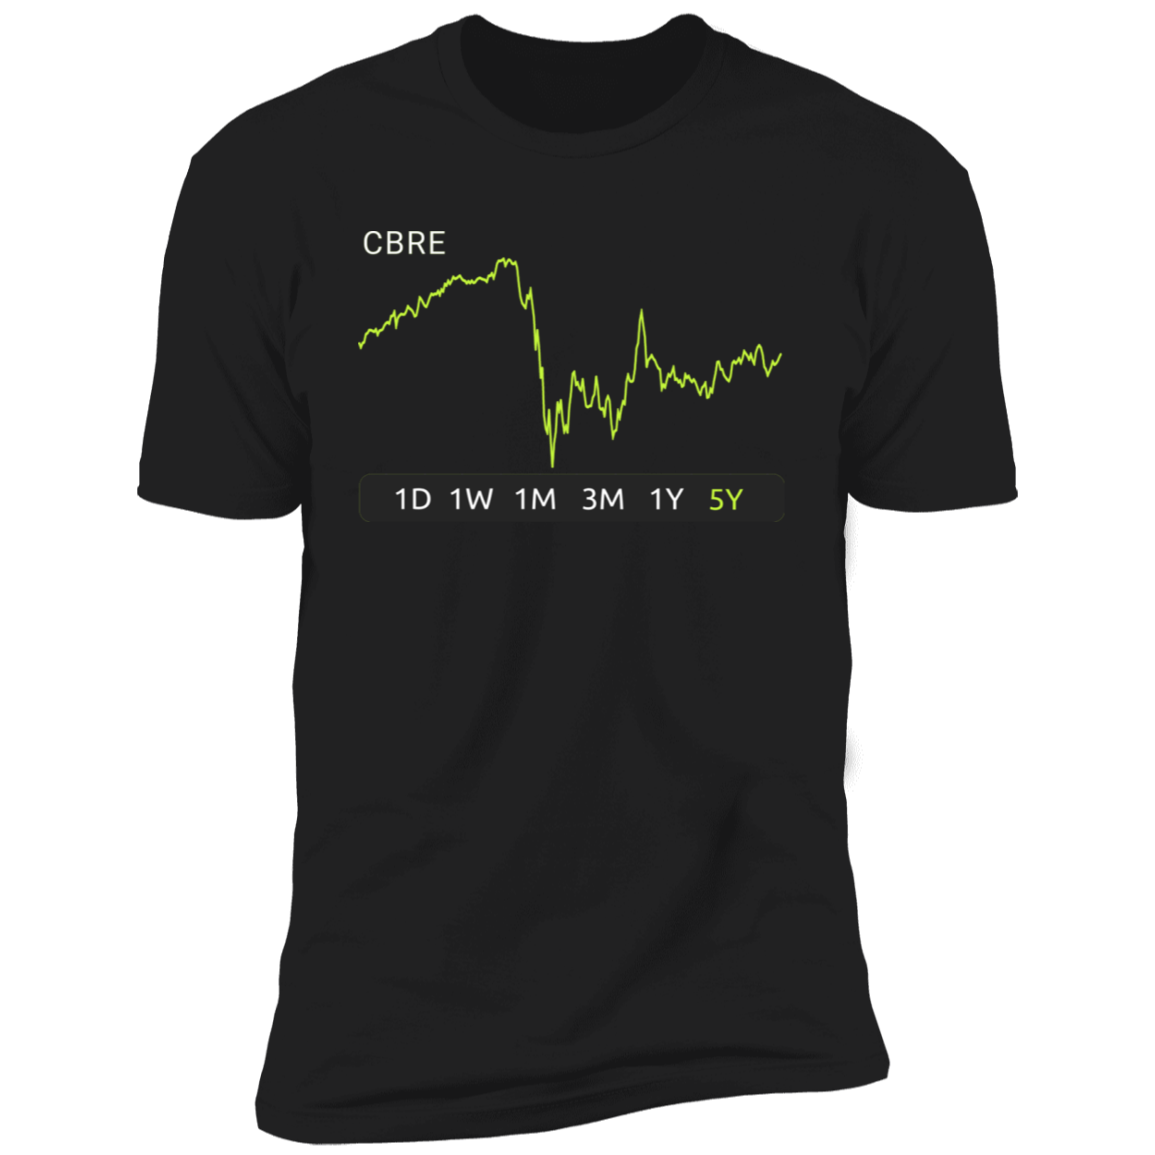 CBRE Stock 5y Premium T-Shirt